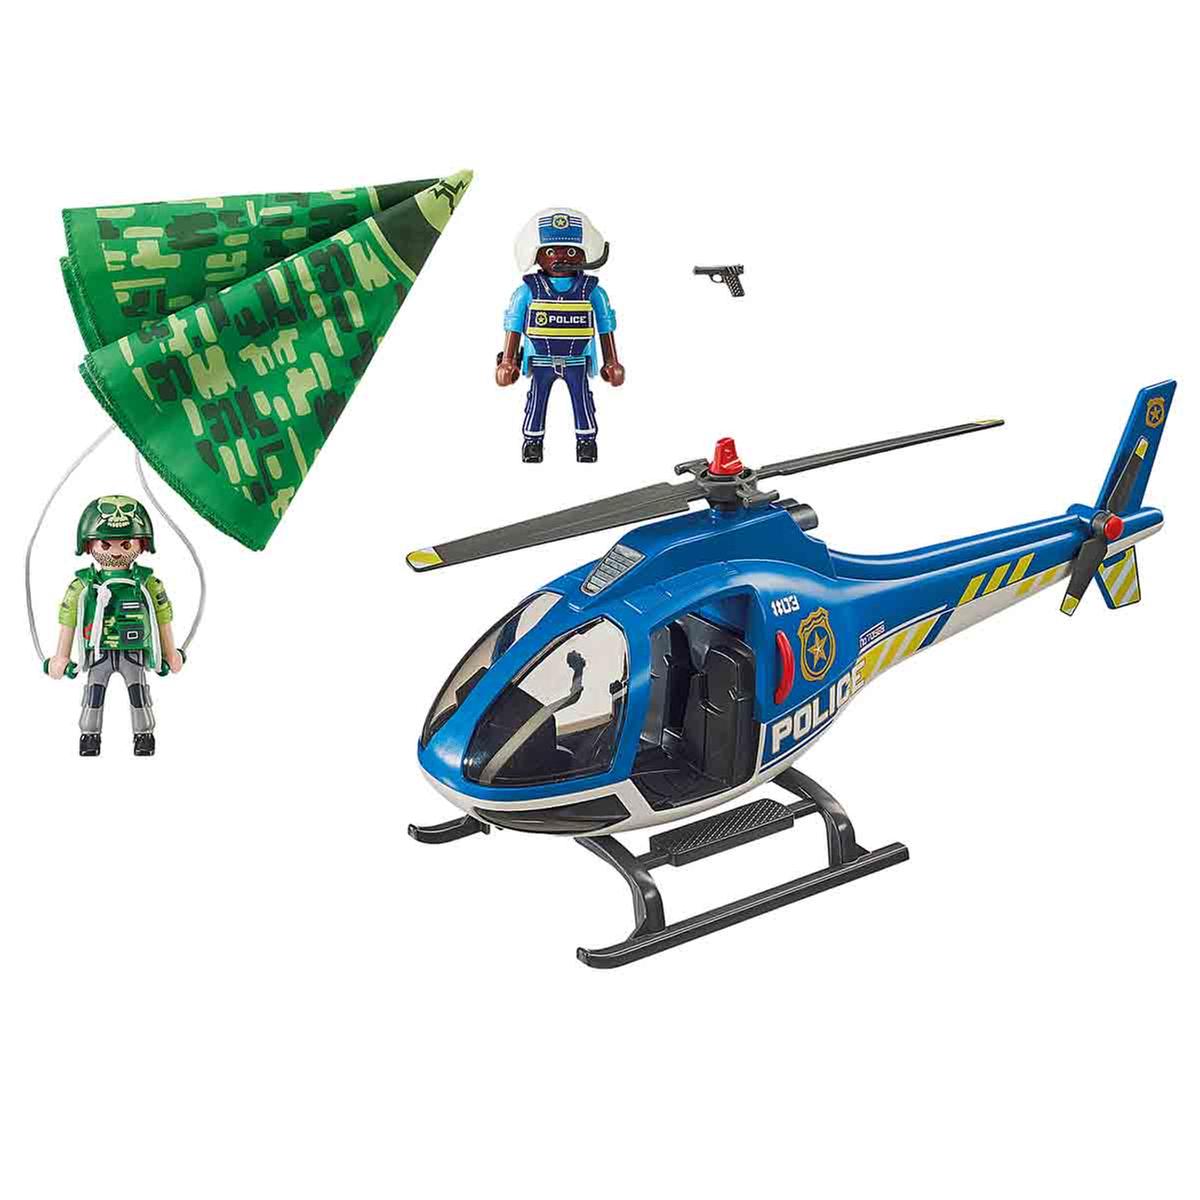 Playmobil - Helicóptero de Policía: Persecución en Paracaídas - 70569 |  City Action Policia | Toys"R"Us España